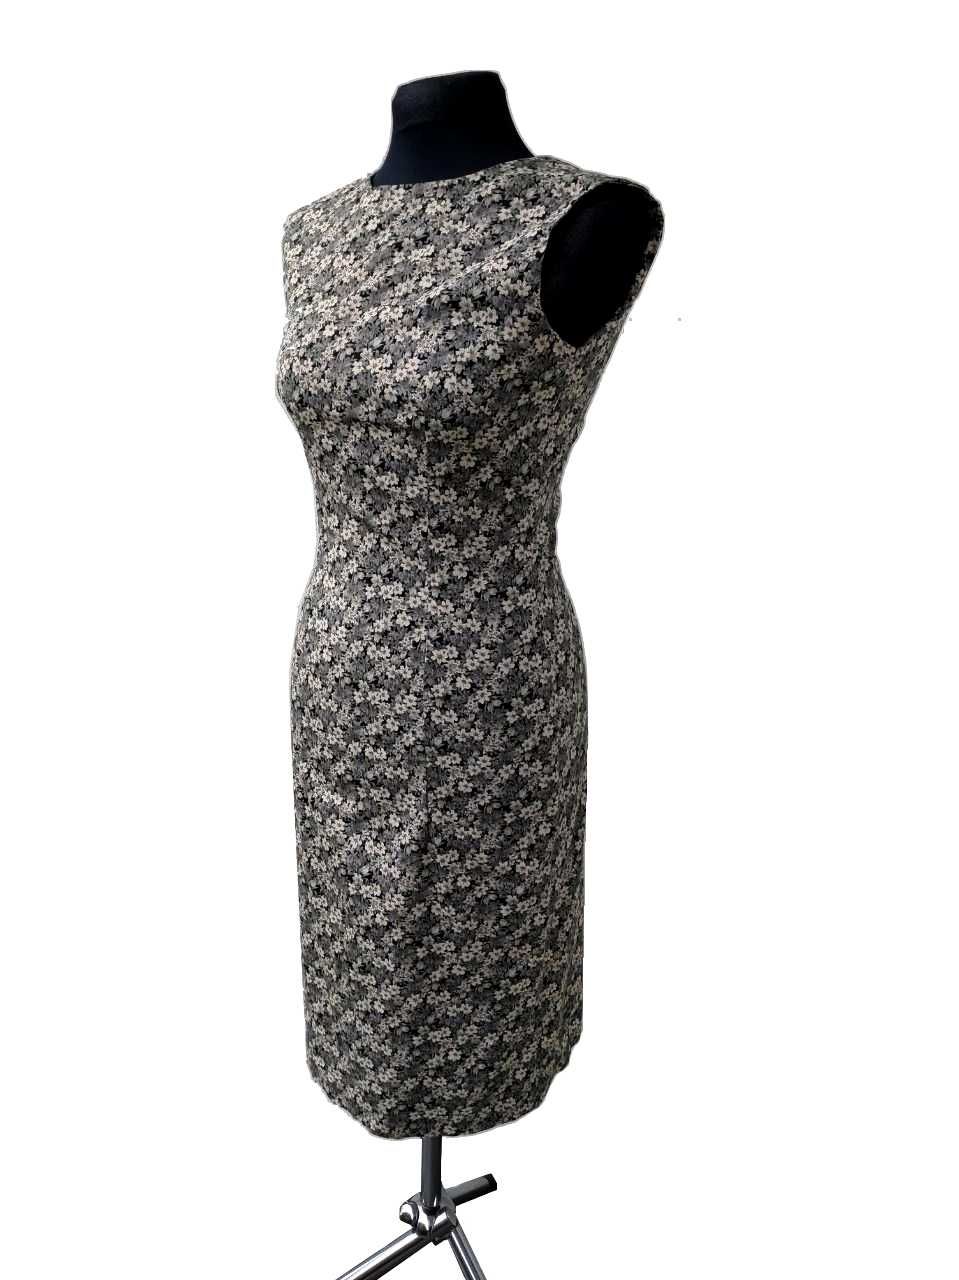 Elegancka szara ołówkowa sukienka w kwiaty 36 S vintage retro preppy